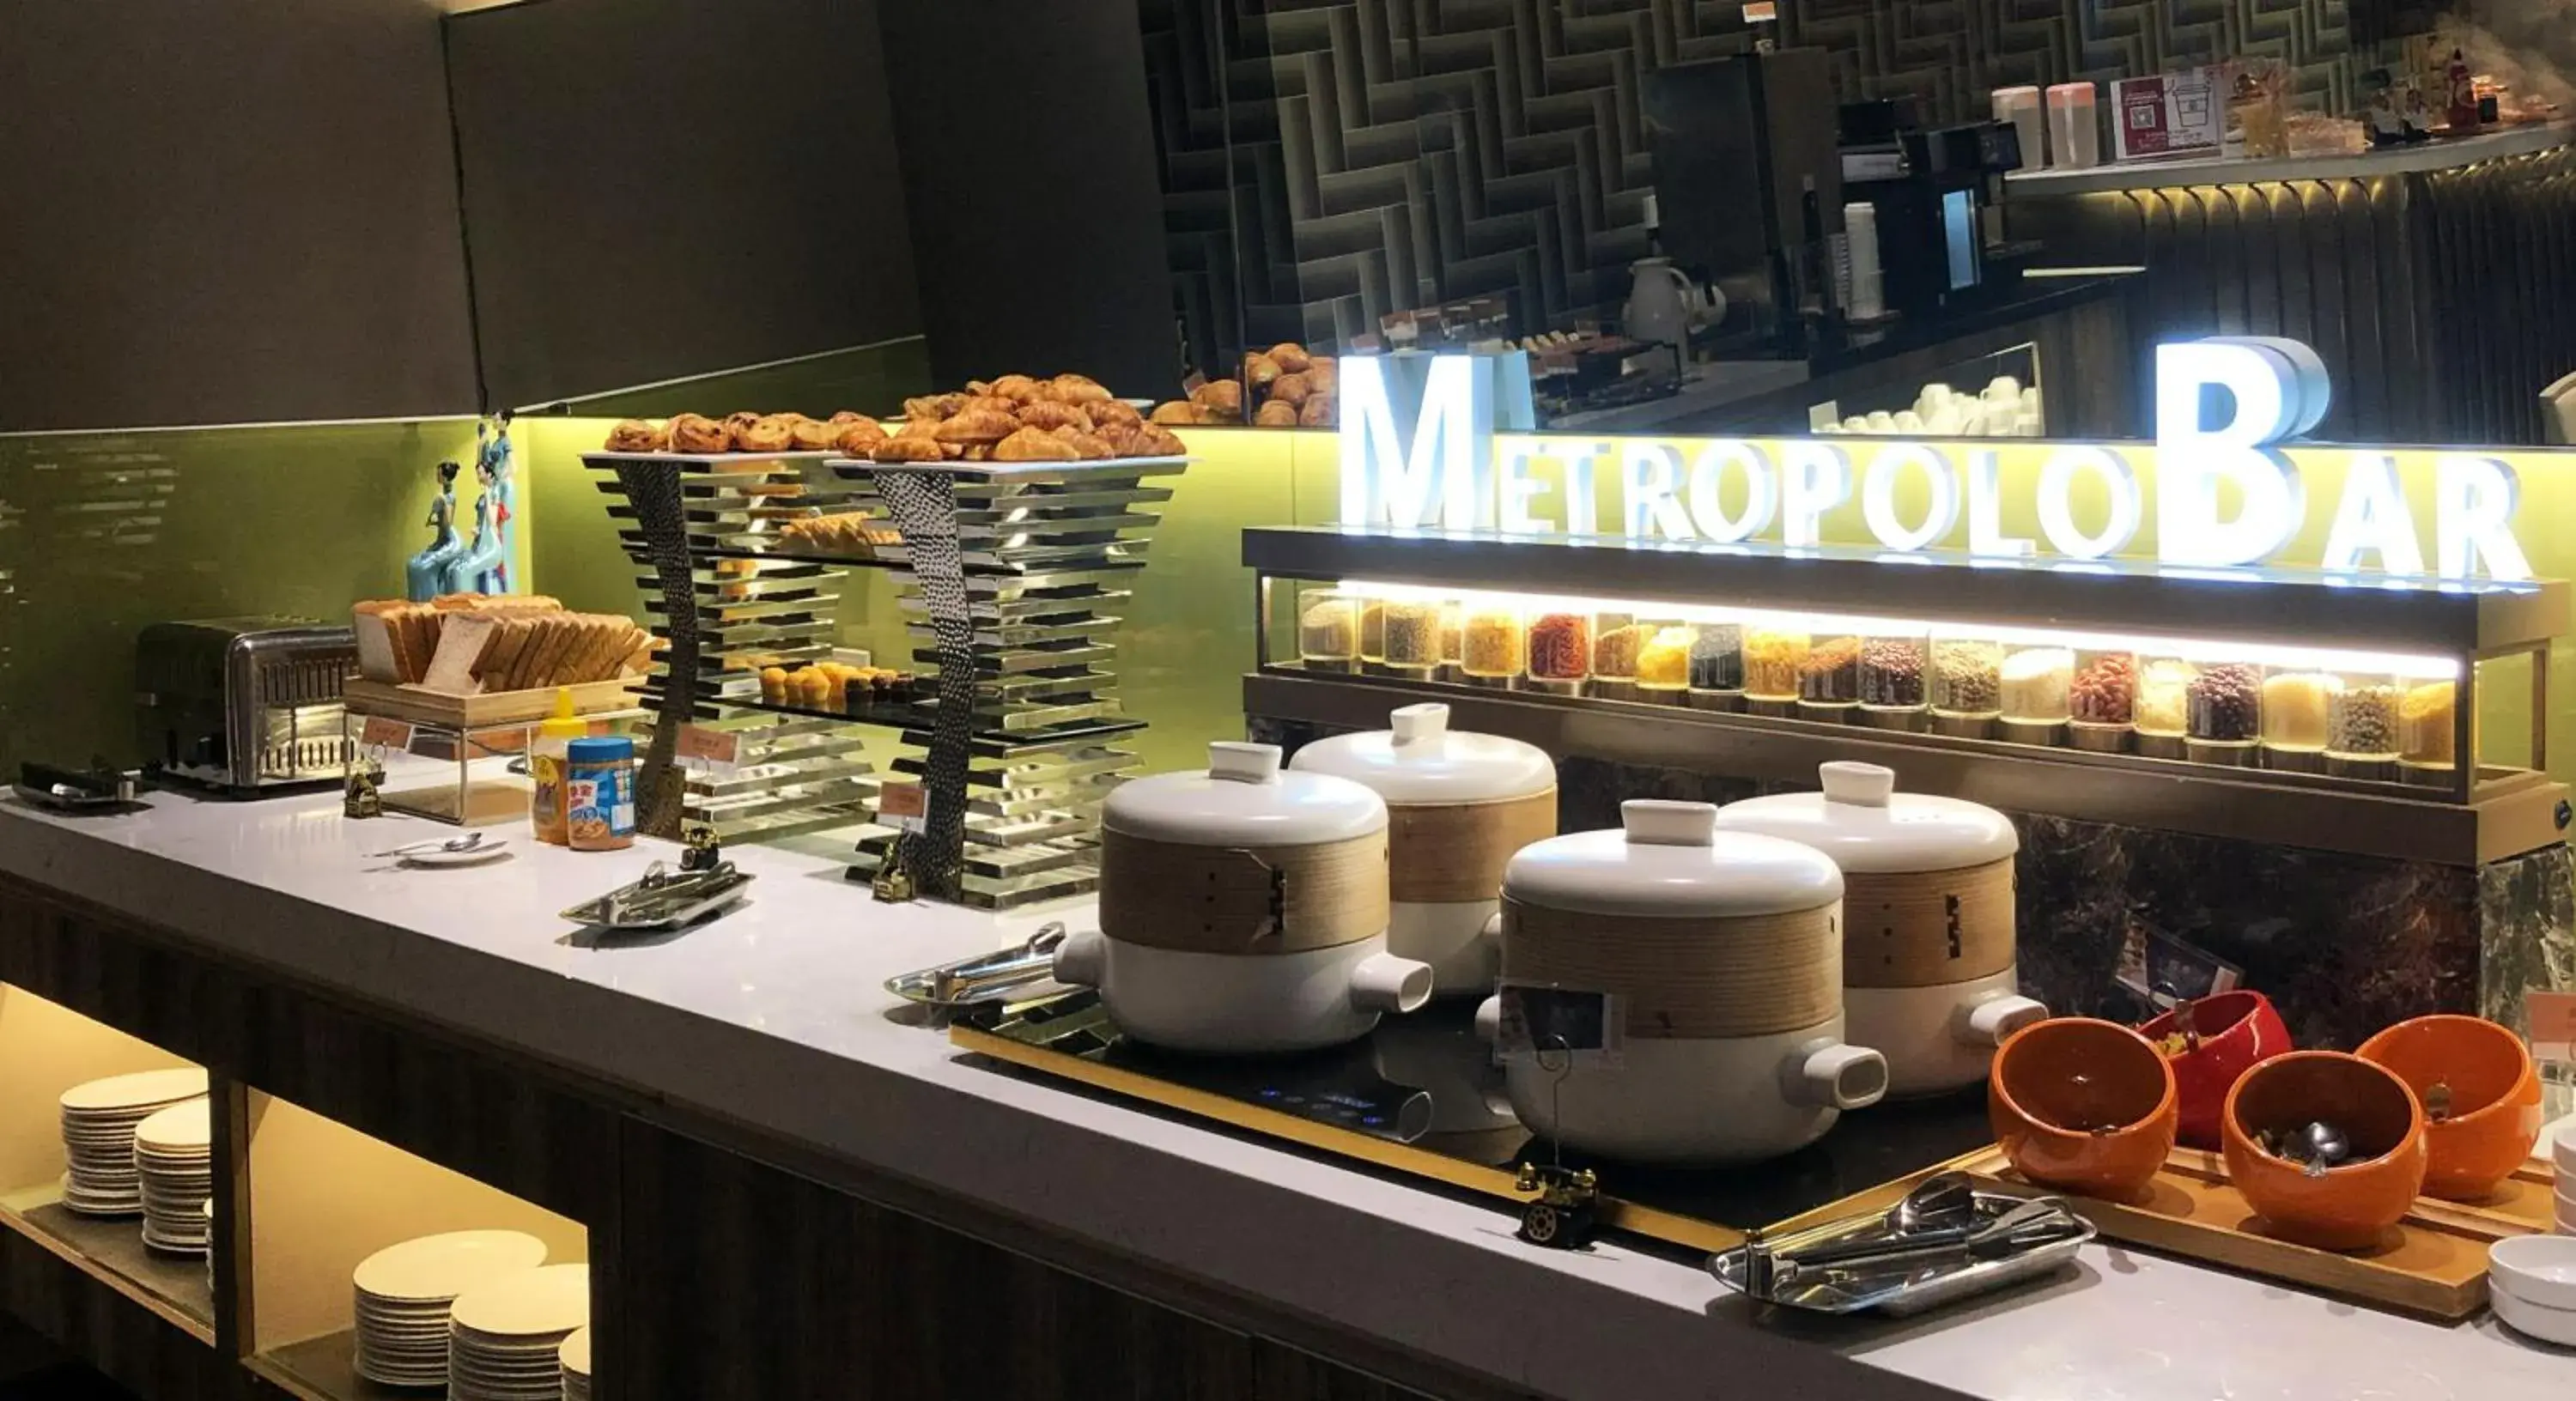 Buffet breakfast in Metropolo Classiq Dahua Hotel Shanghai Jingan